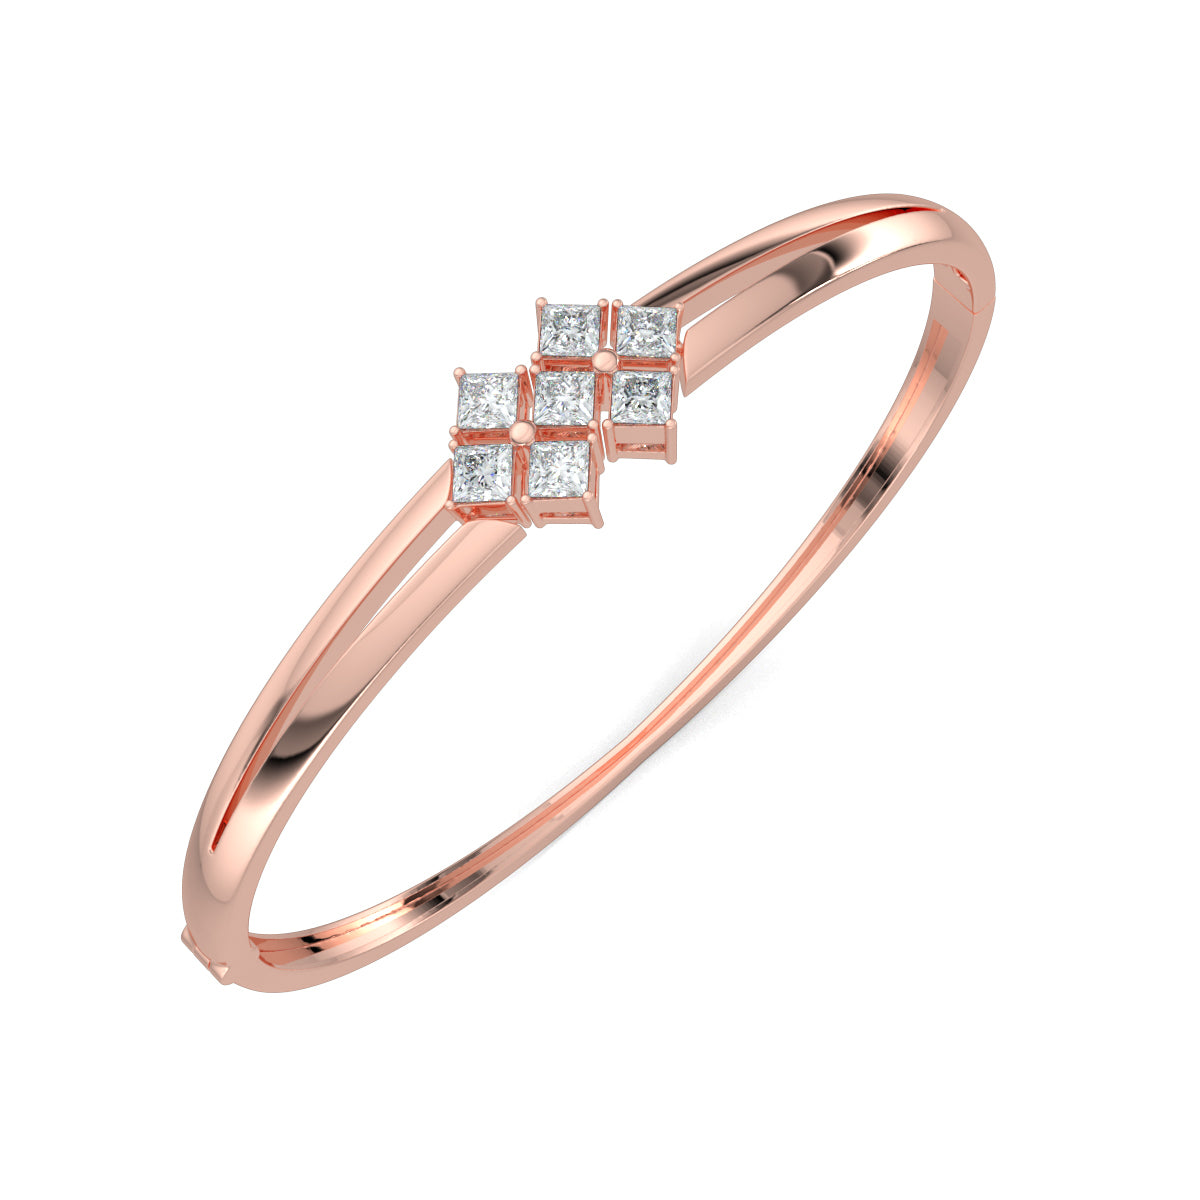 Rose Gold, Diamond Bracelet, Natural diamond bracelet, Lab-grown diamond bracelet, Princess cut diamond bracelet, Oval bracelet, Diamond jewelry, Luxury bracelet, Statement bracelet, Fashion accessory.